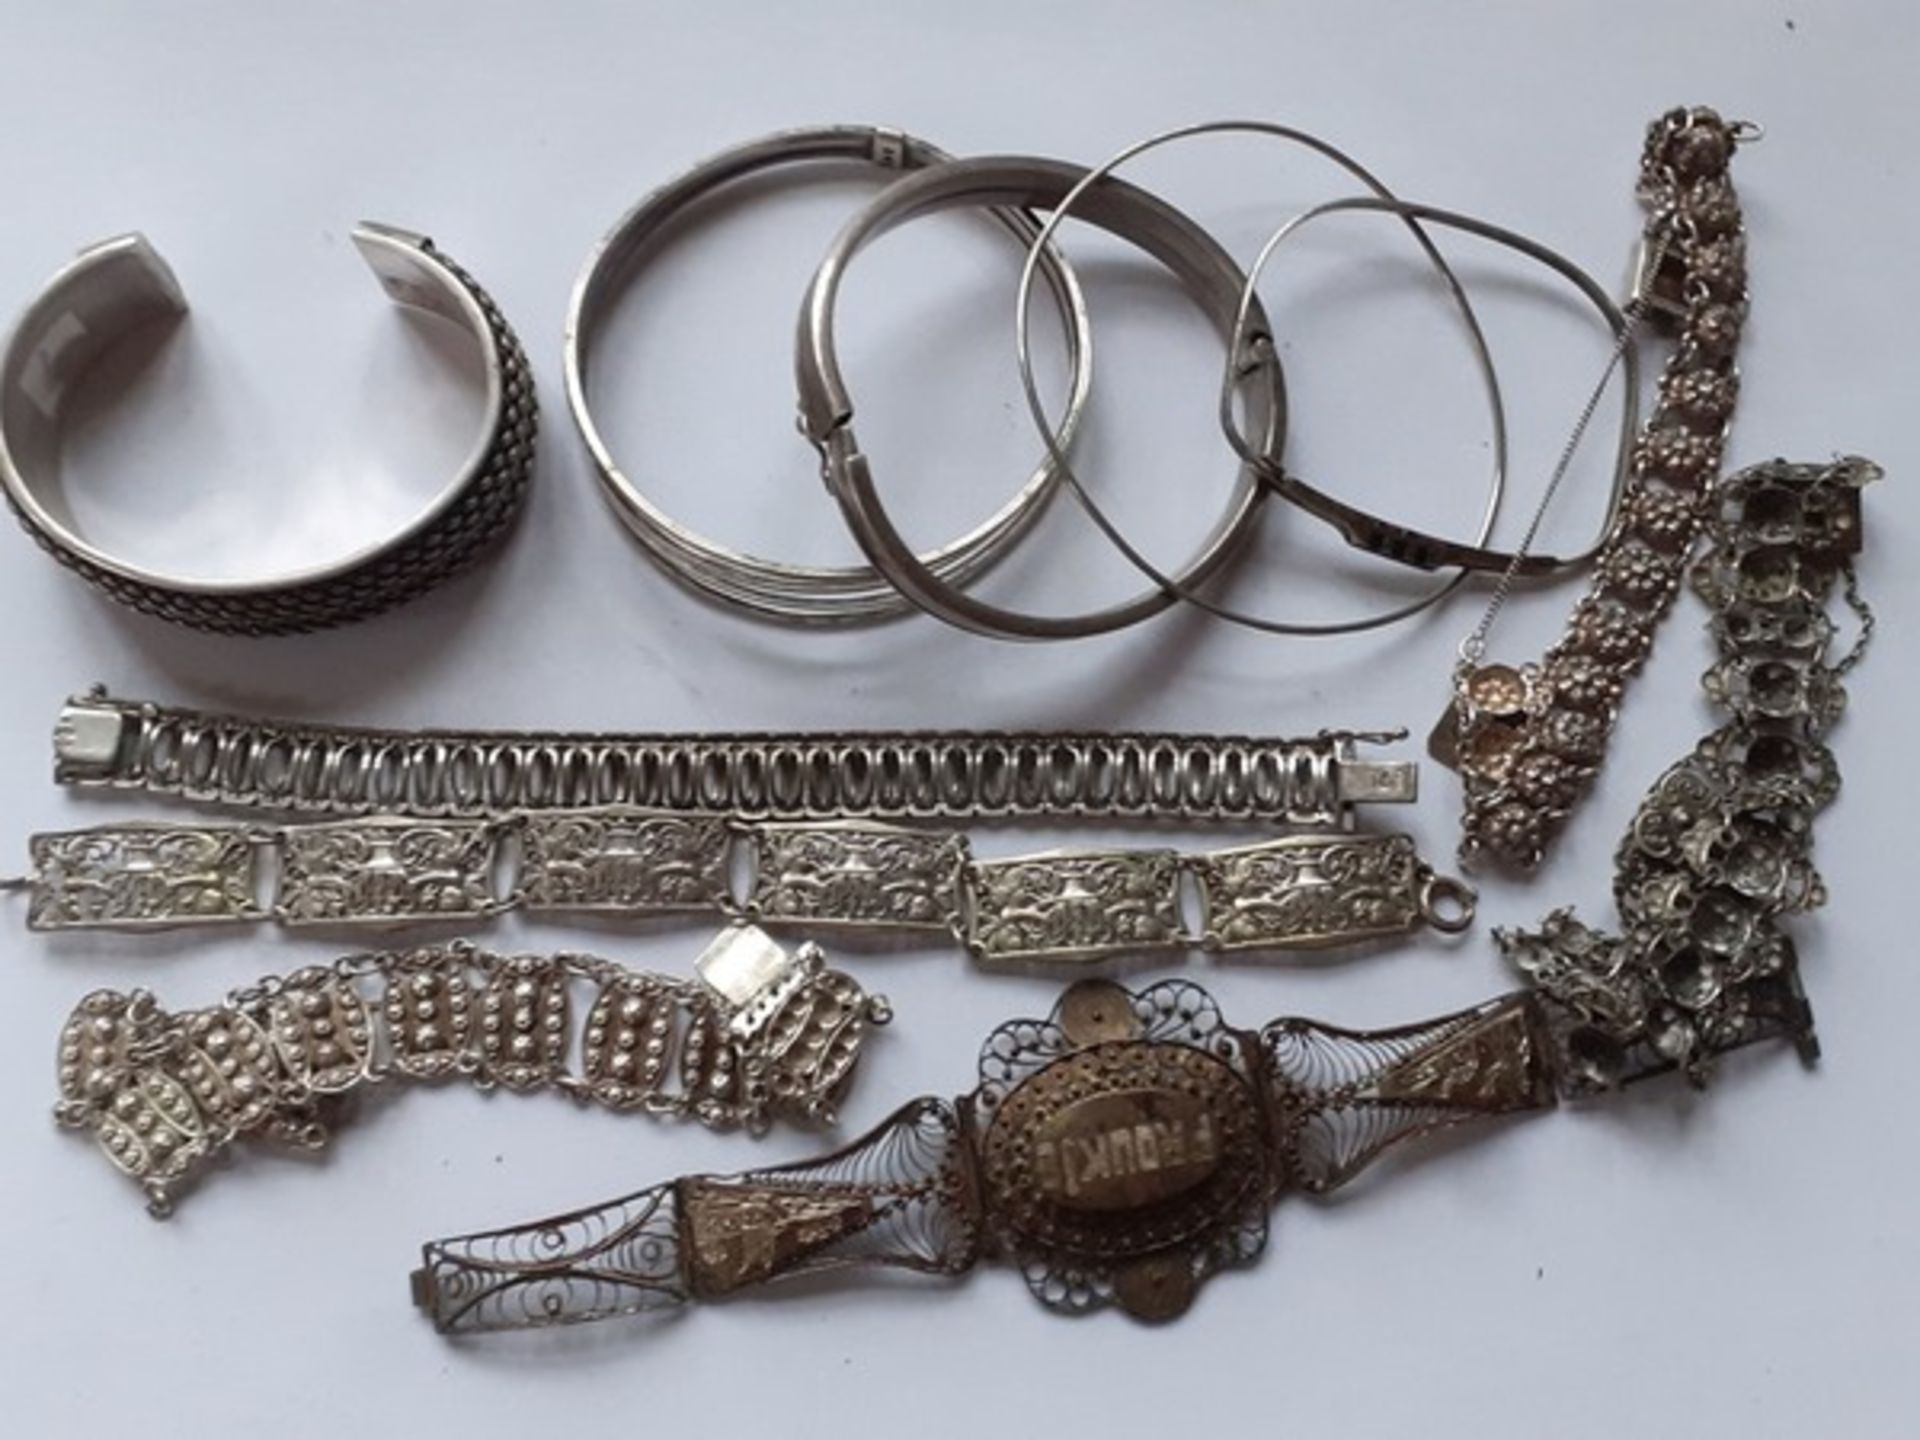 (Zilver) Zilveren armbandenDivers zilveren armbanden. Conditie: Deels beschadigd.